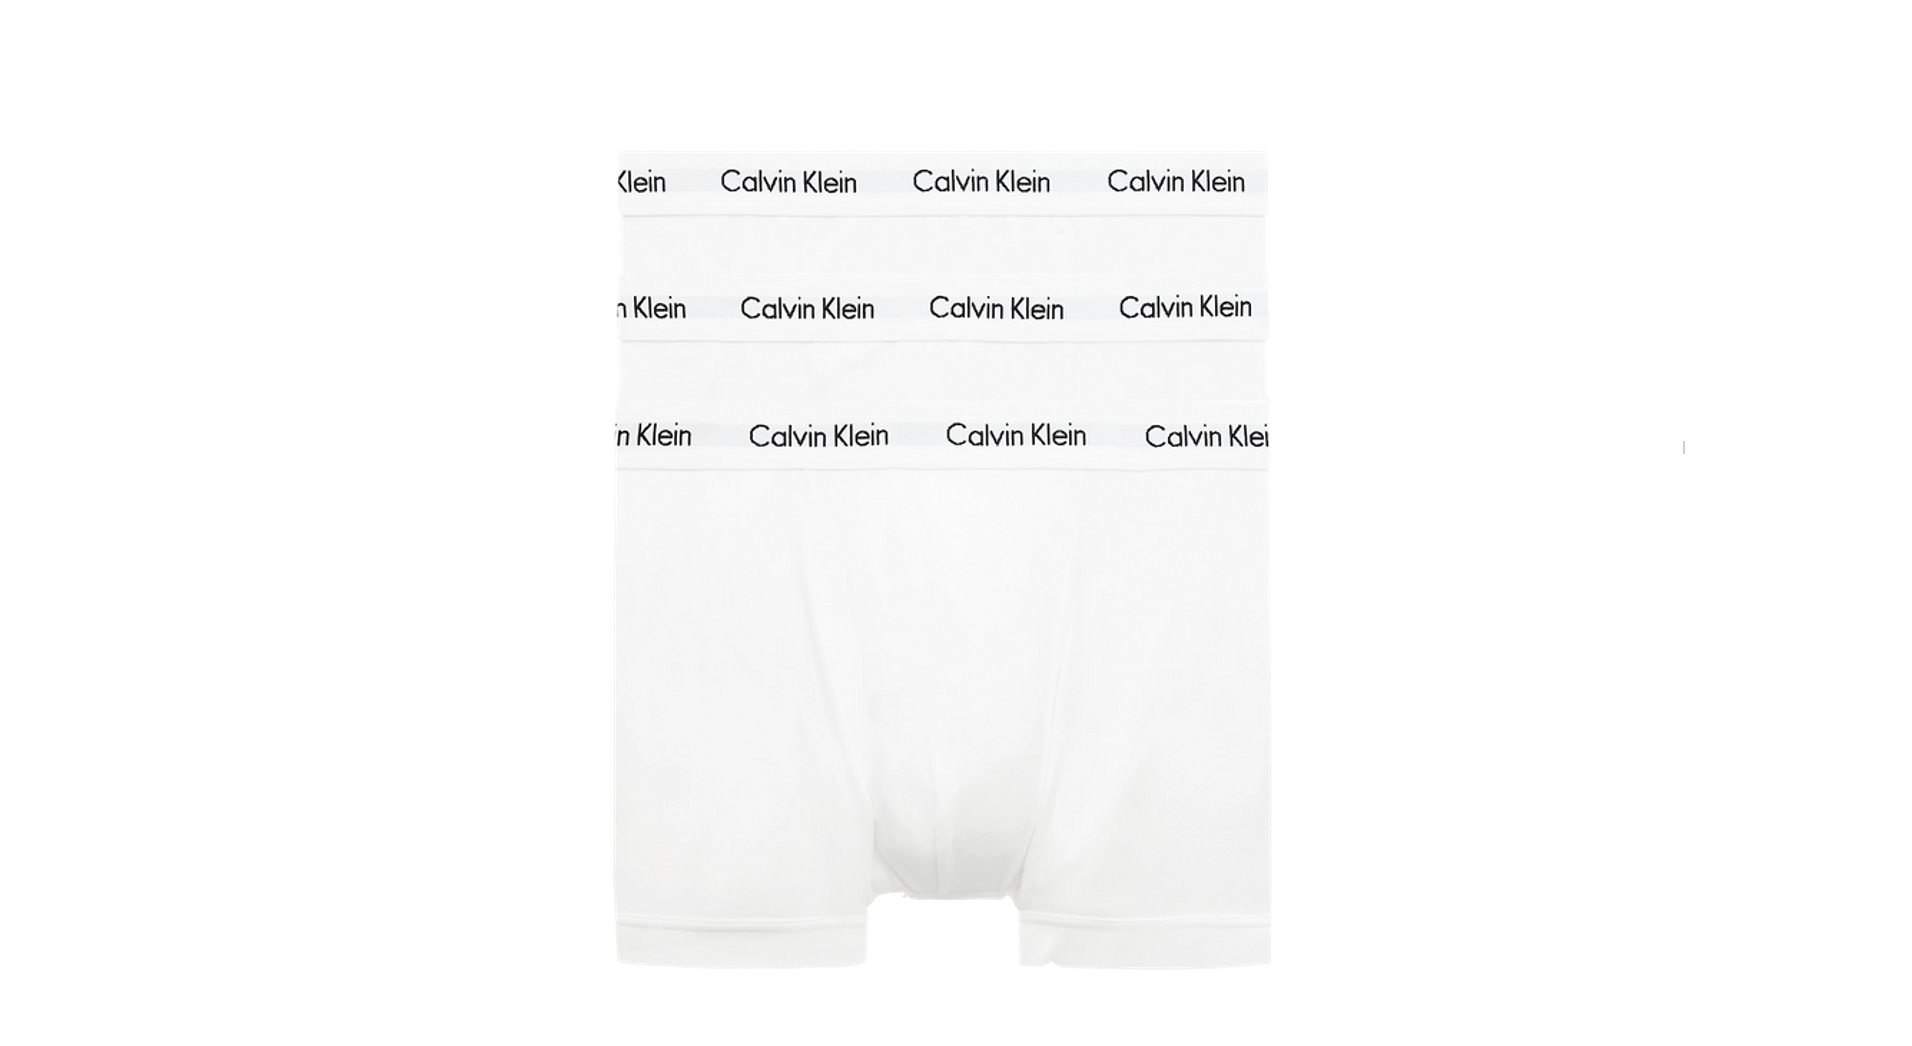 Calvin cline trunks